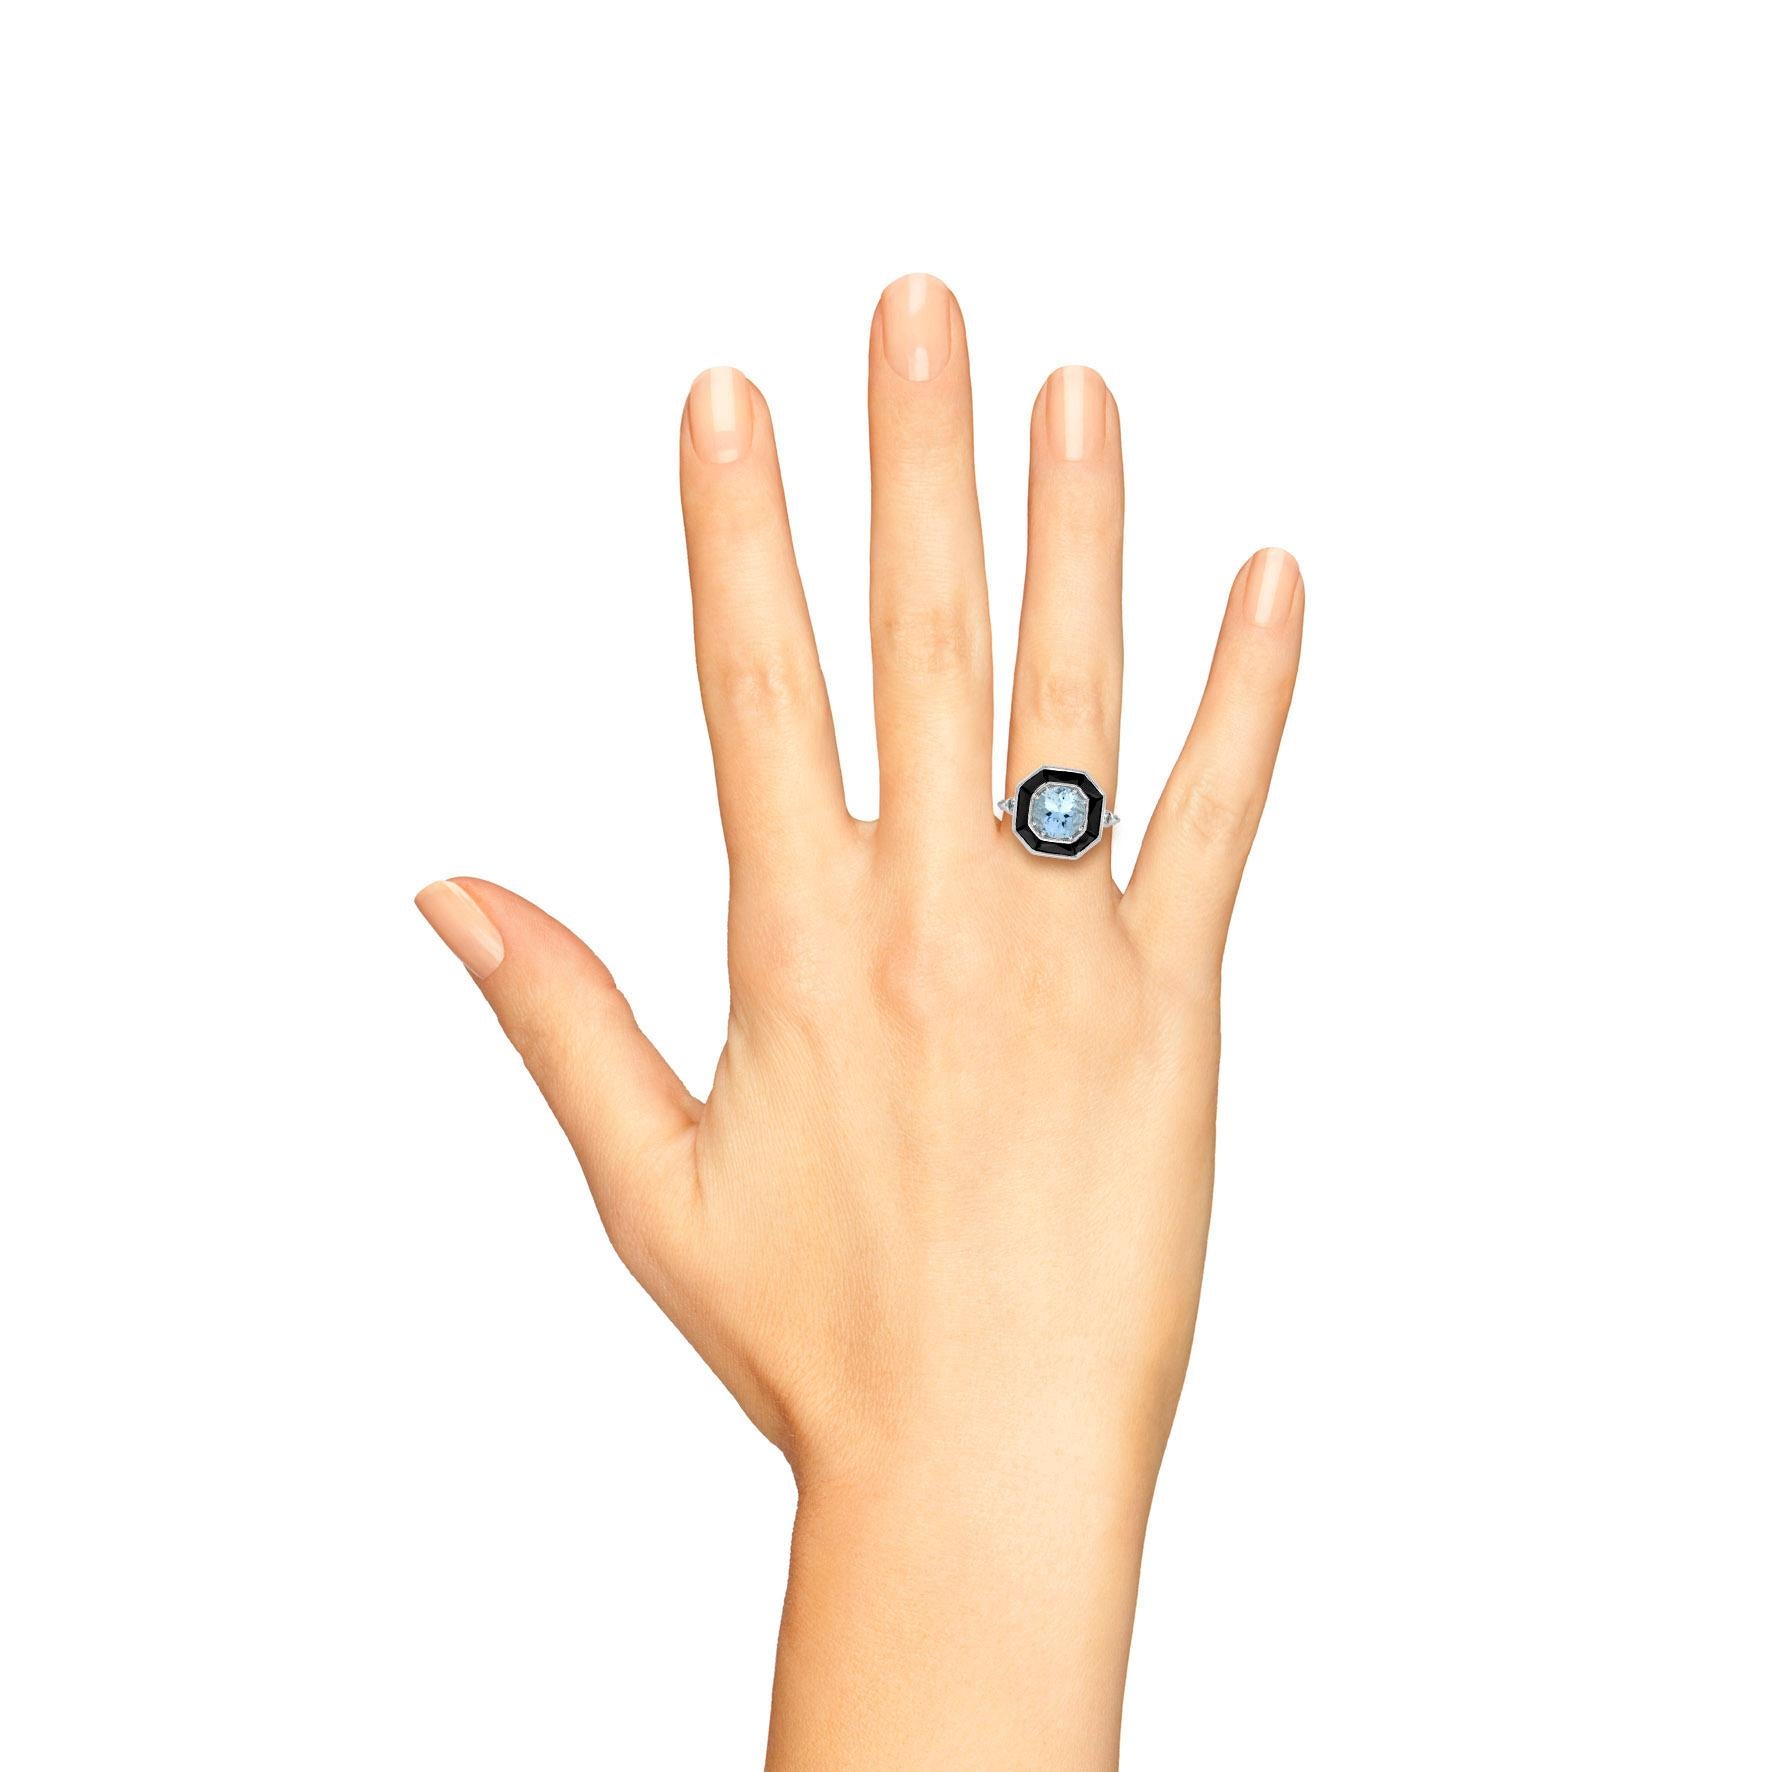 Dieser wunderschöne Ring fängt die ikonische Ästhetik der Art-Déco-Ära in schickem geometrischen Design ein. Das wunderschöne achteckige Design ist in der Mitte mit einem Aquamarin besetzt, der von einem speziell geschliffenen schwarzen Onyx umgeben